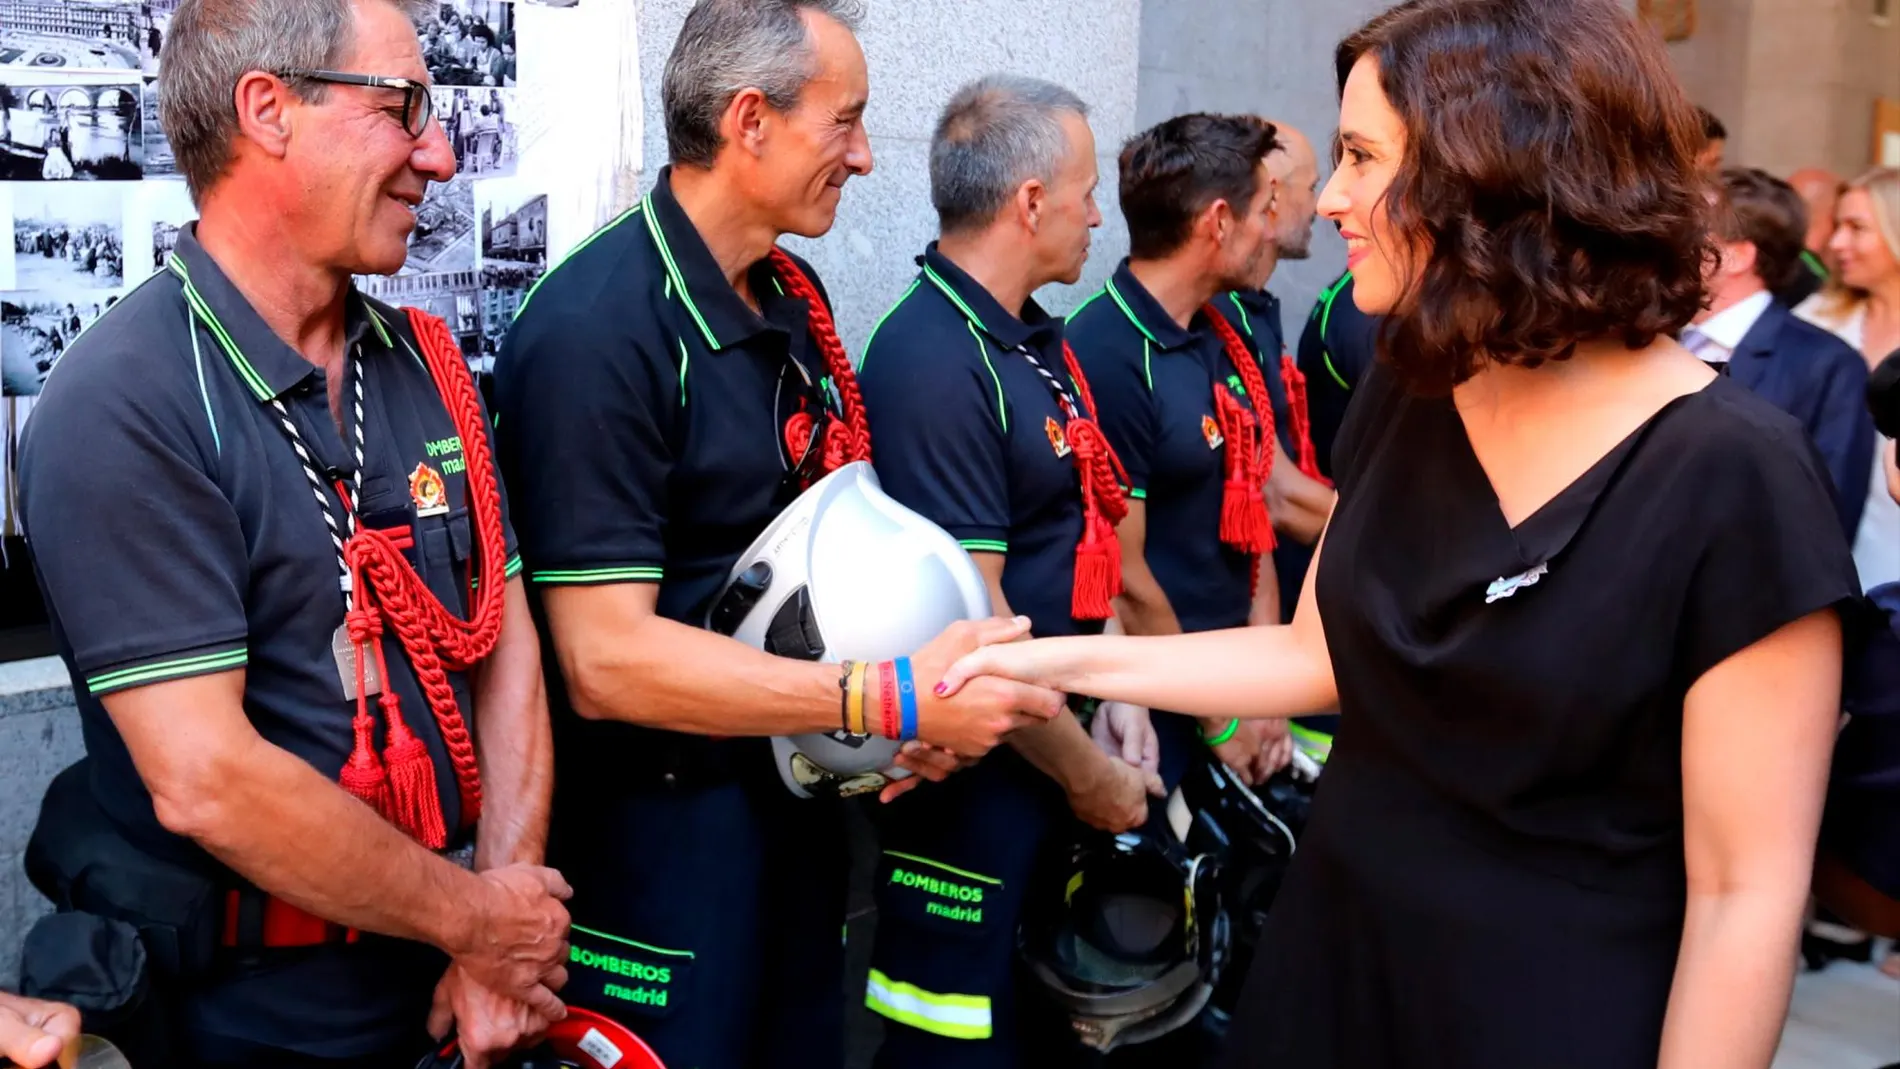 La presidenta de la Comunidad de Madrid, Isabel Díaz Ayuso, saluda a varios mandos de los Bomberos de la Comunidad en el colegio de La Salle dentro de los actos programados en honor de la Virgen de la Paloma, patrona de los bomberos.